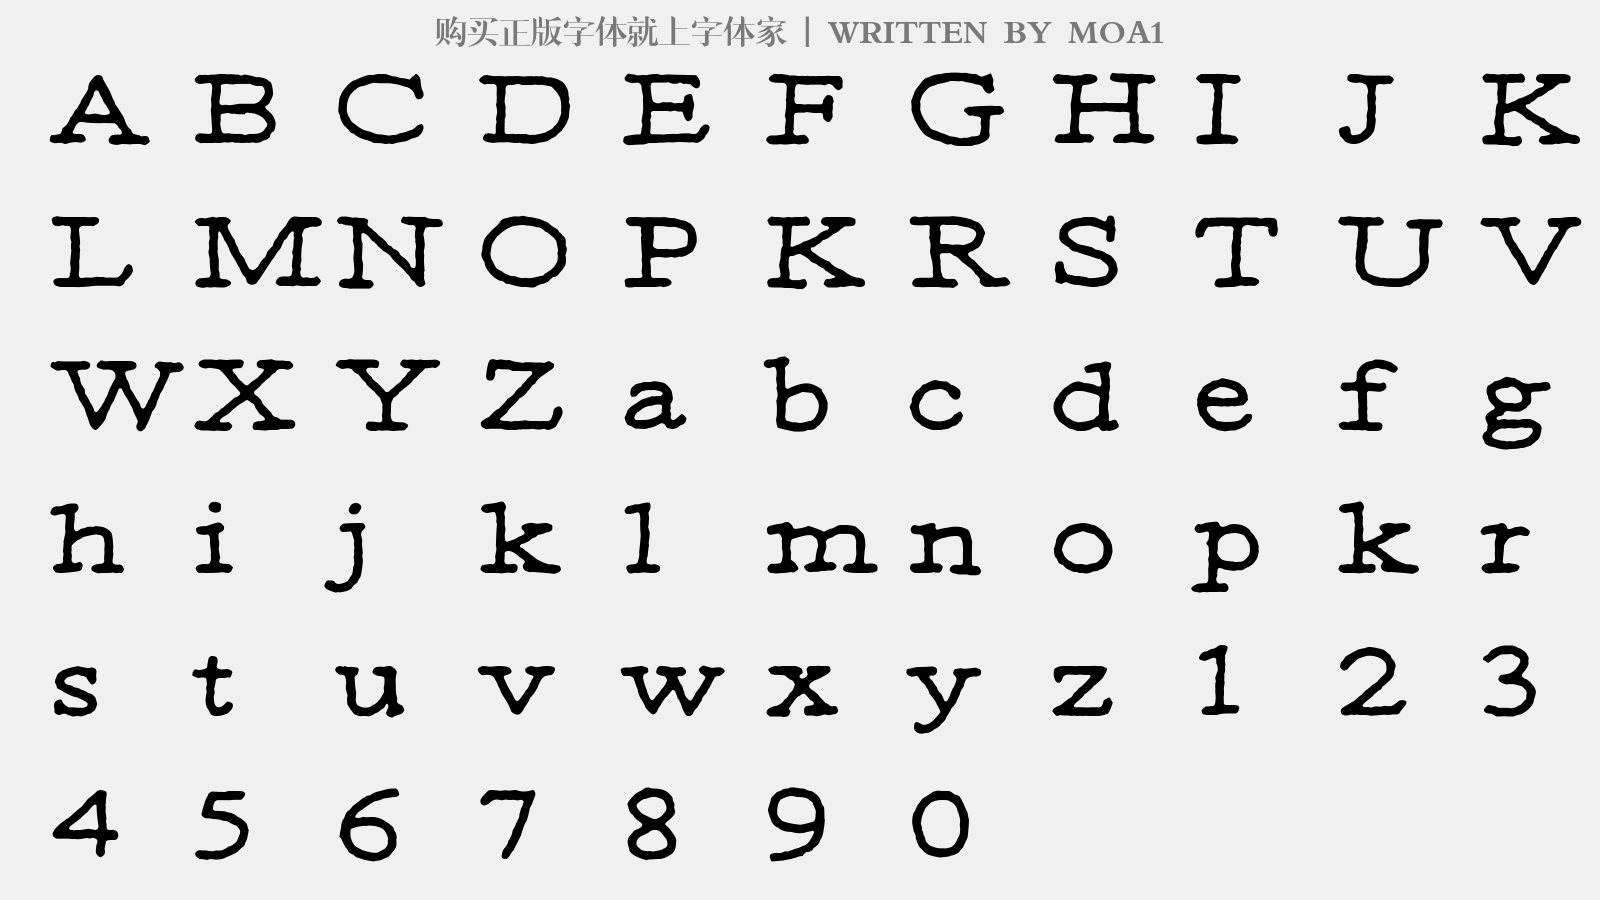 MOA1 - 大写字母/小写字母/数字